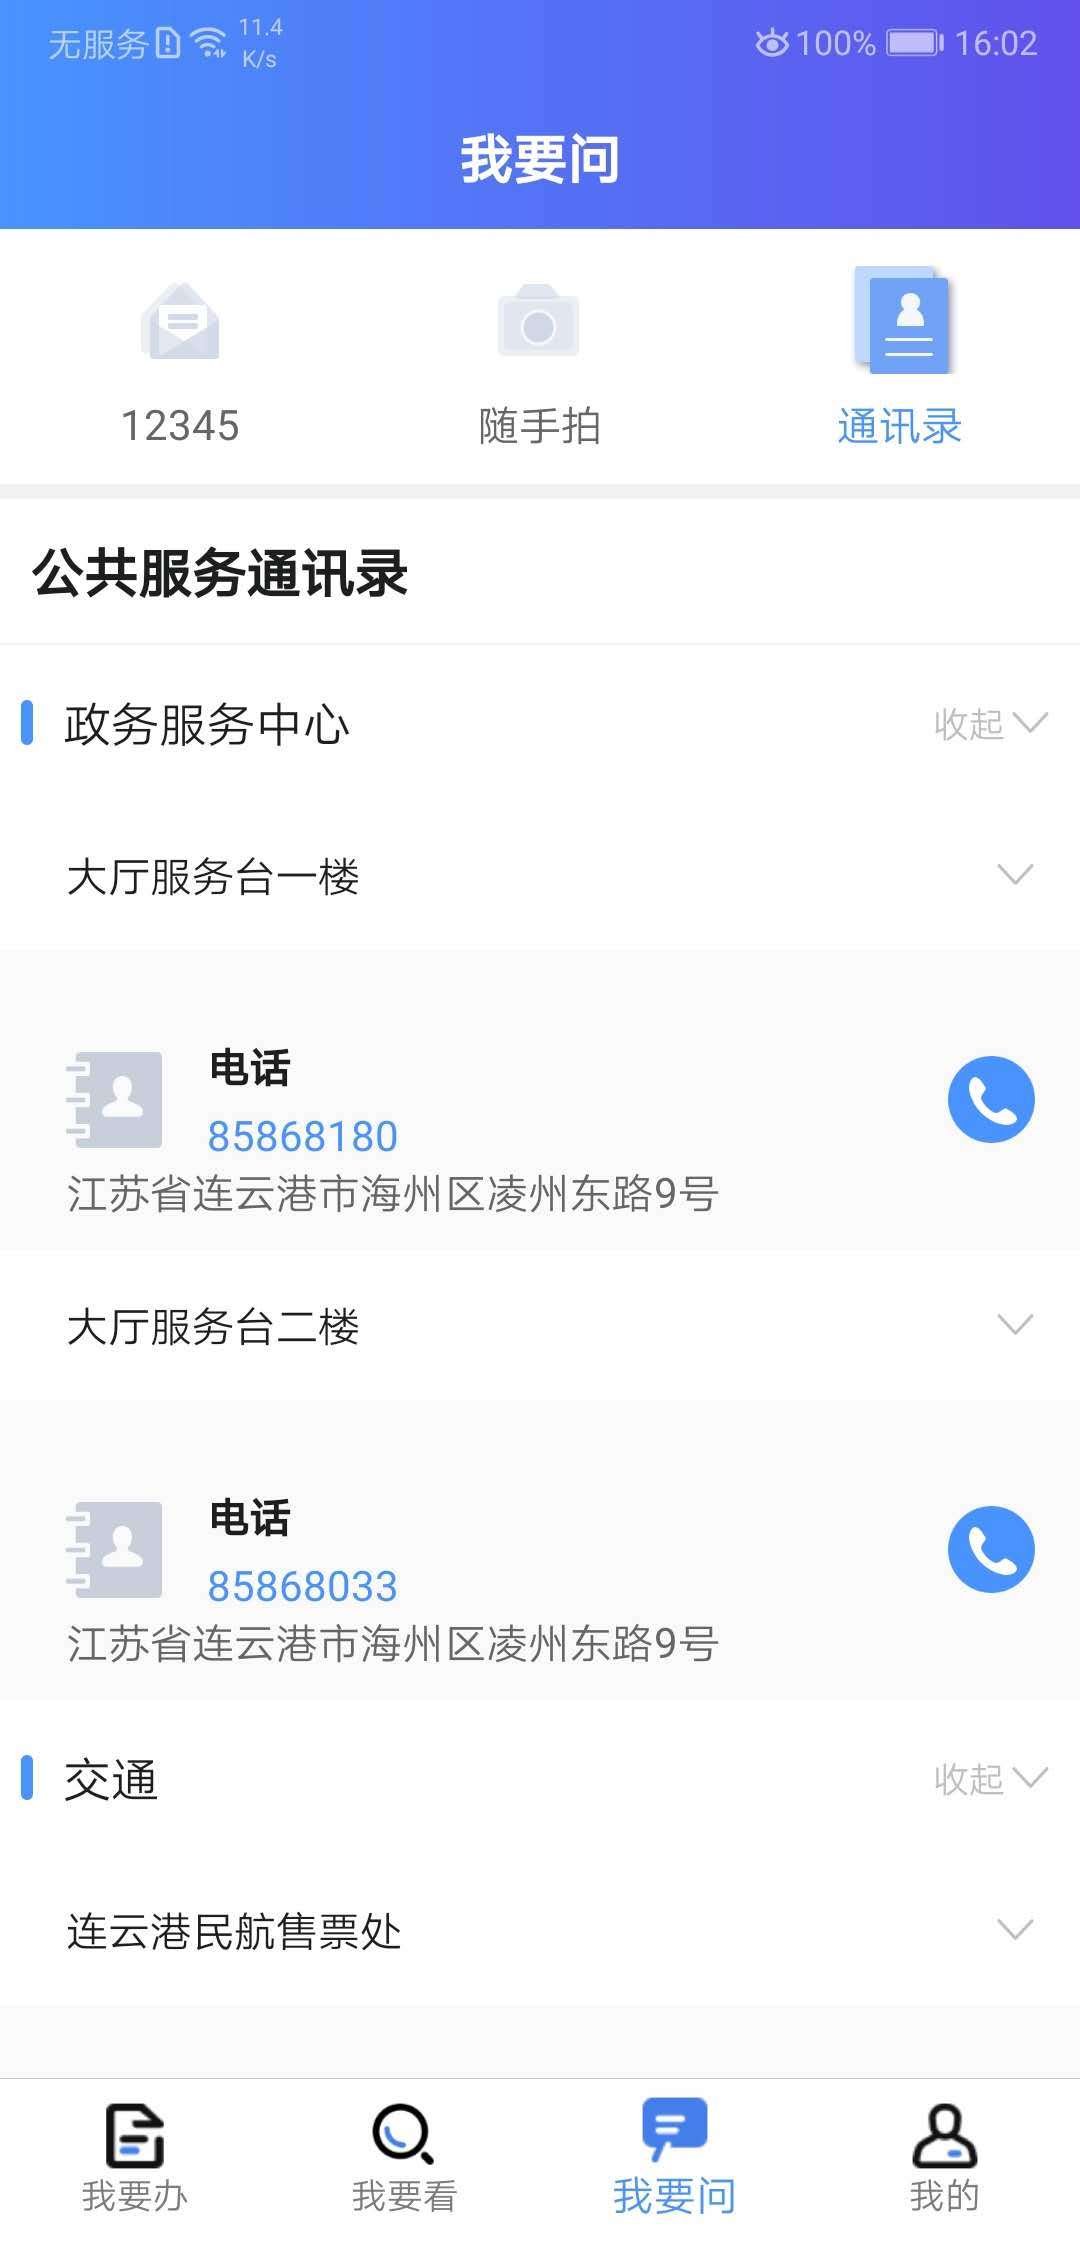 我的连云港app官方手机版软件特色图片